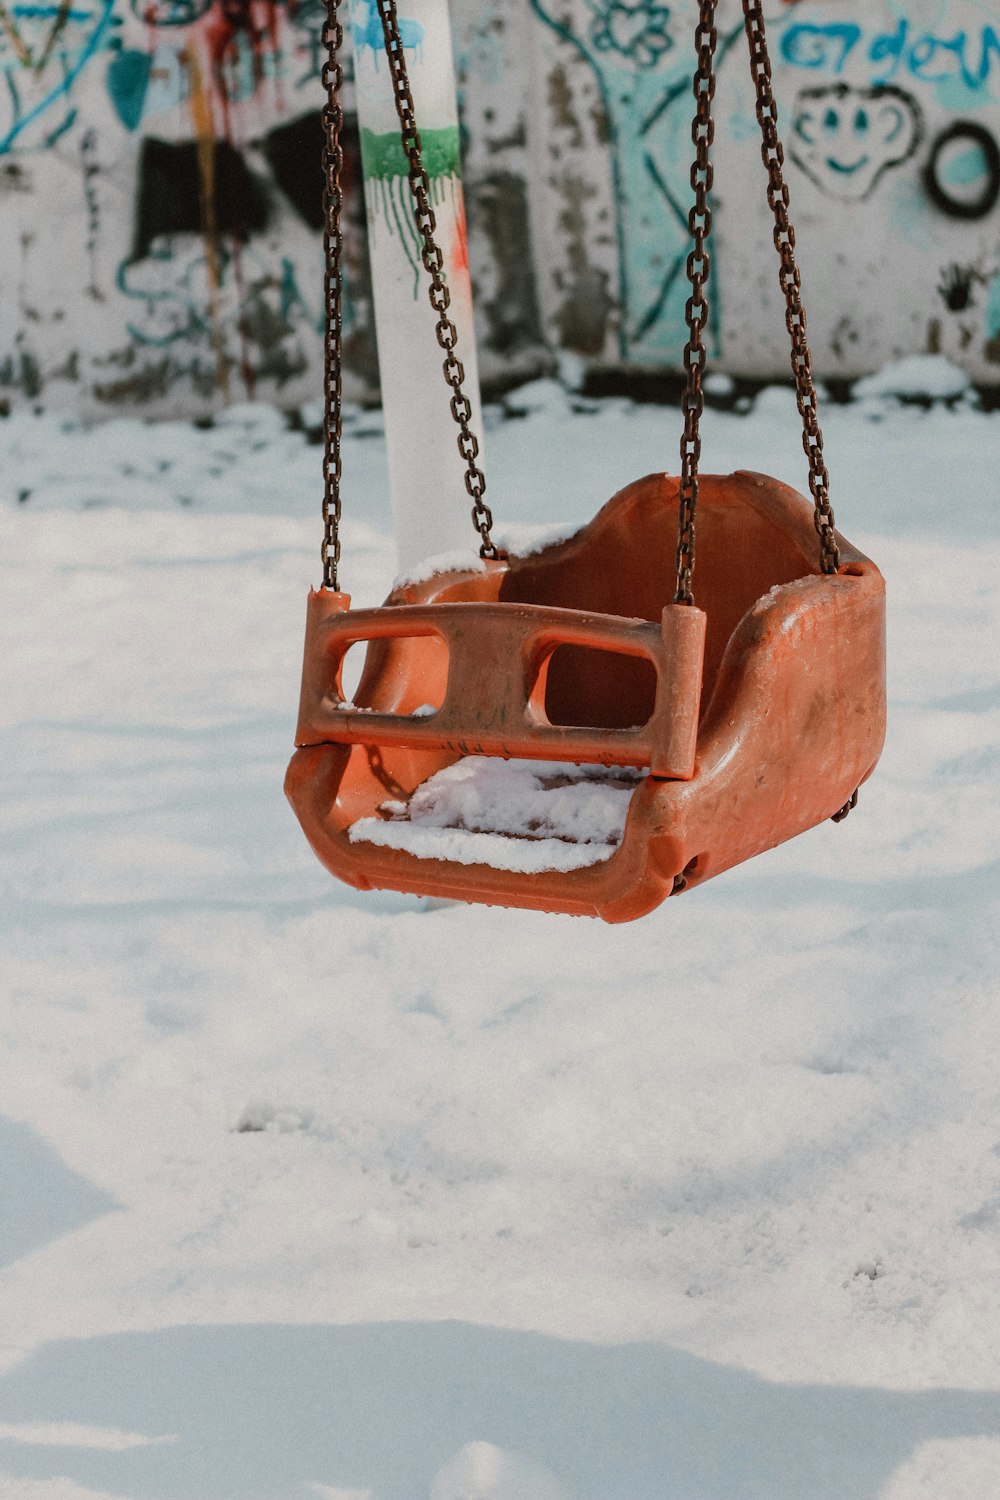 Un columpio oxidado colgando de una cadena en la nieve